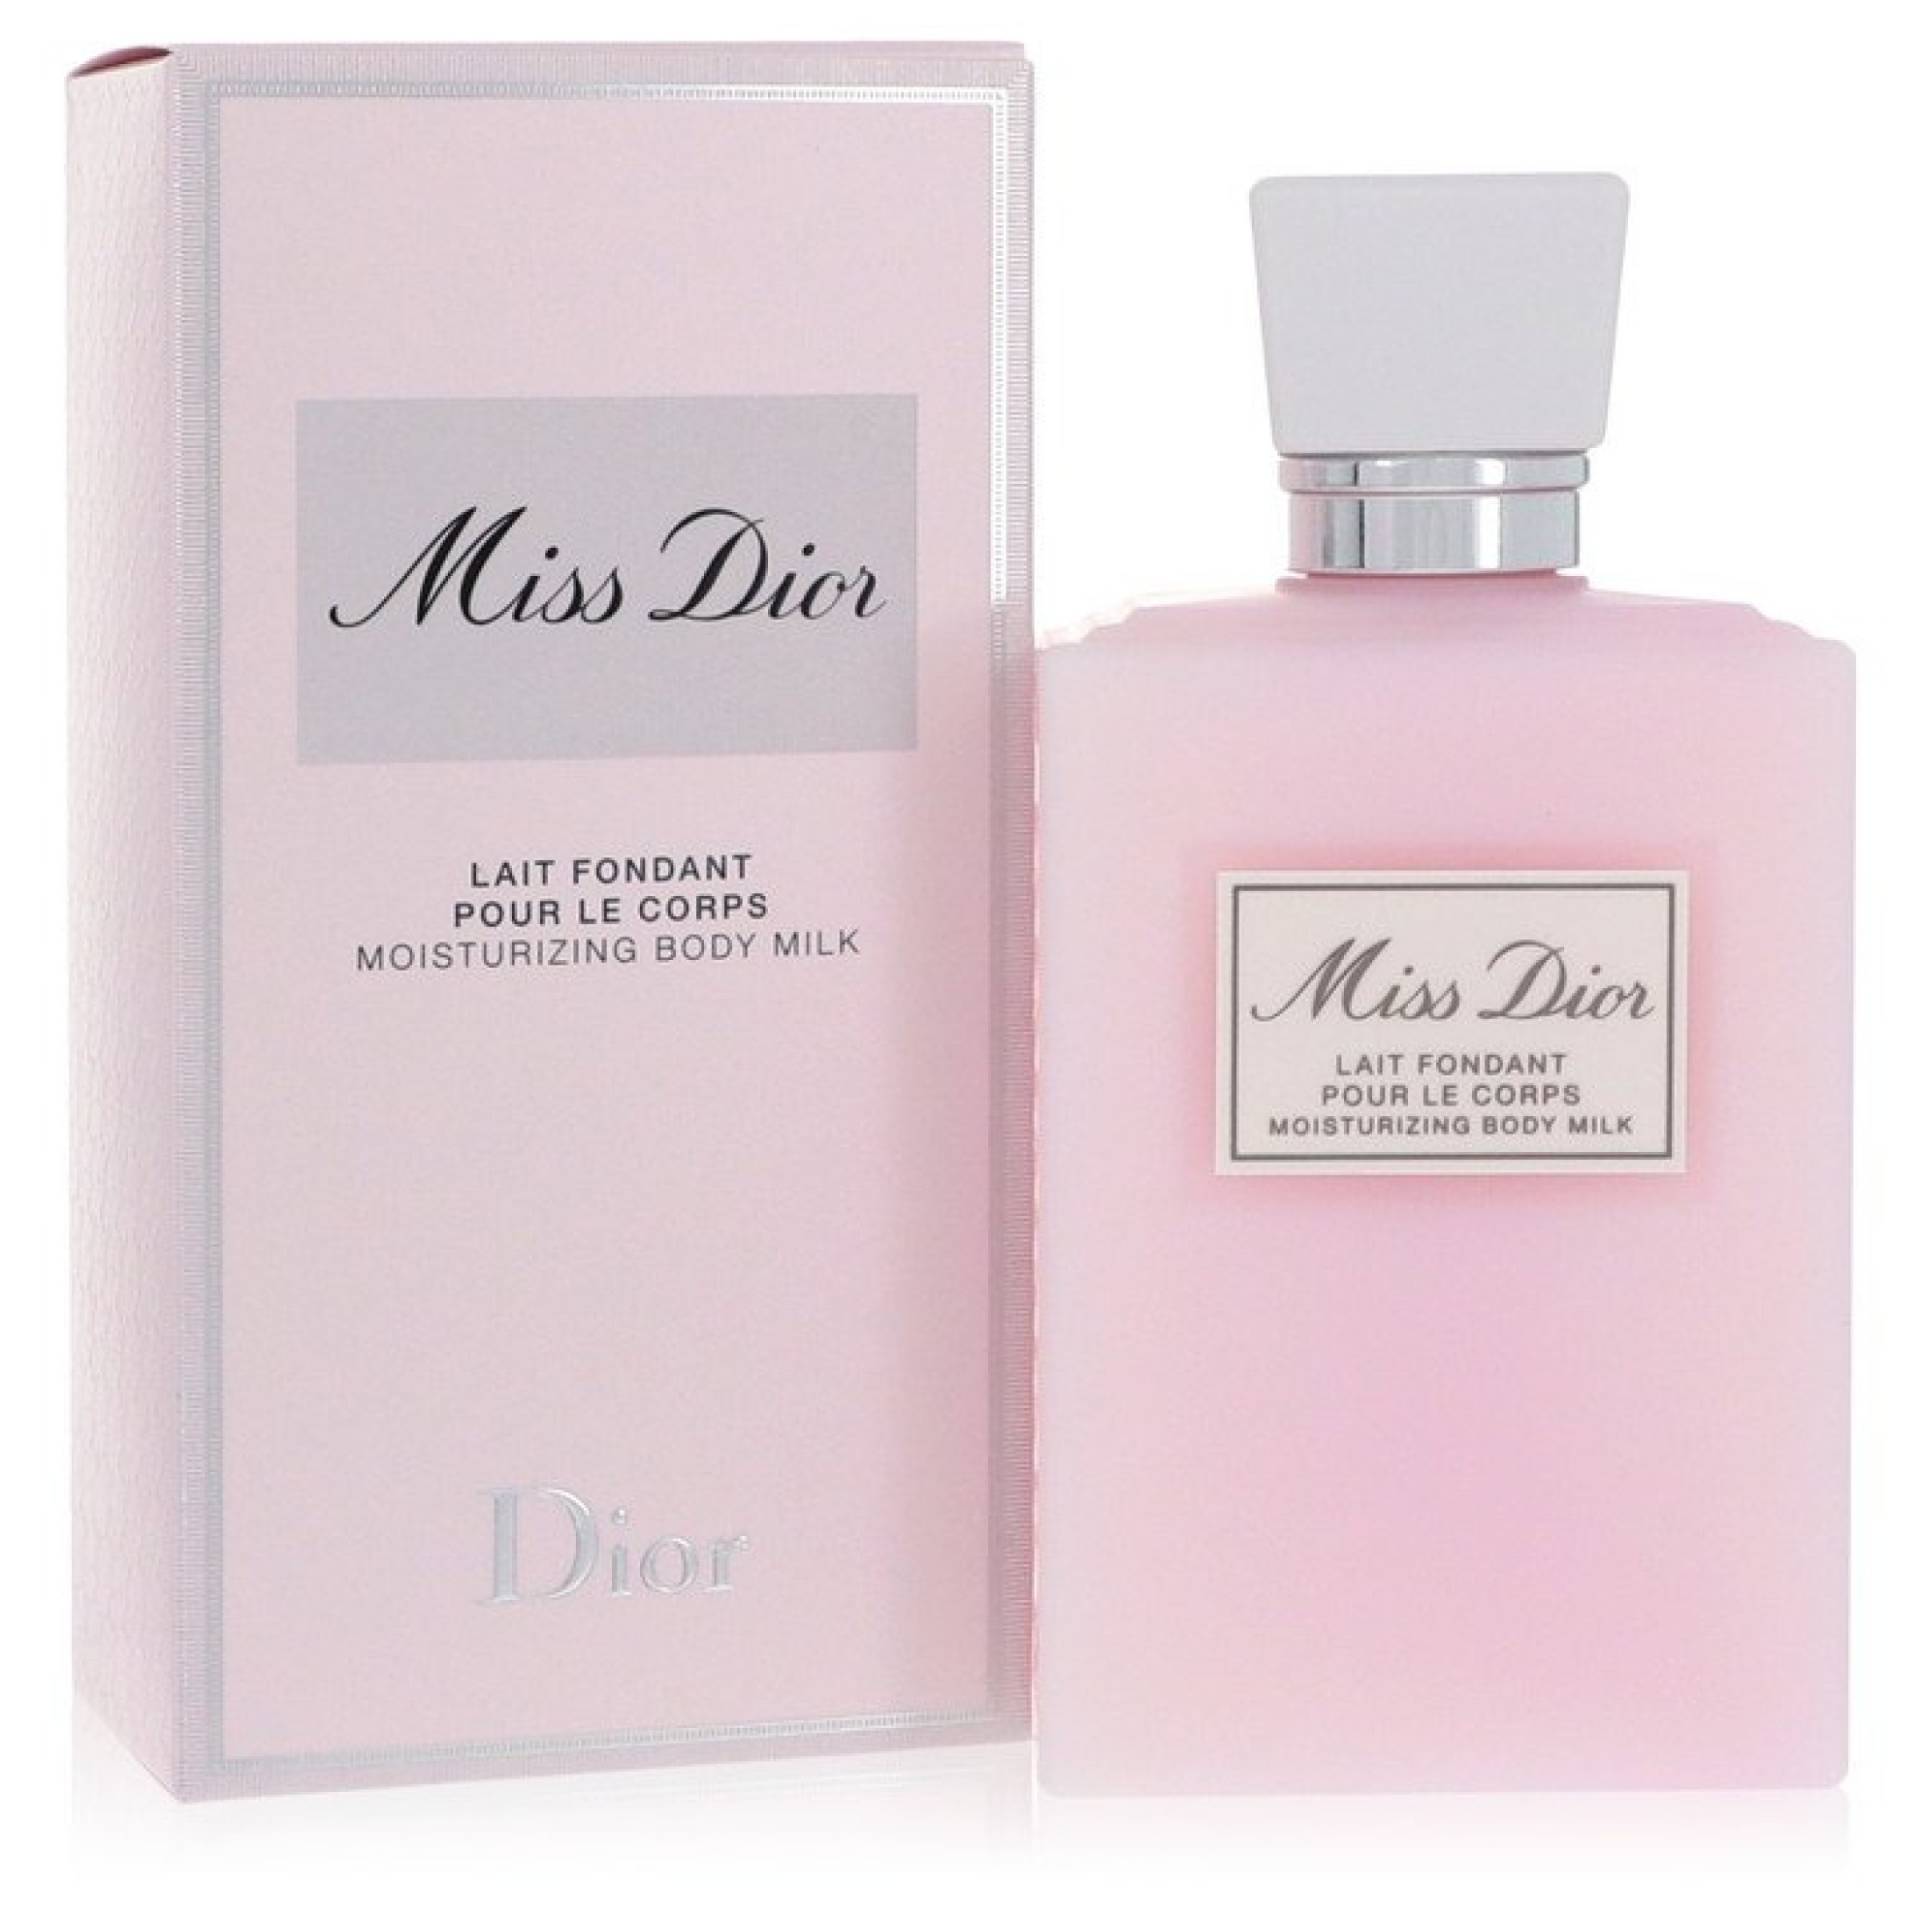 Christian Dior Miss Dior (Miss Dior Cherie) Body Milk 201 ml von Christian Dior